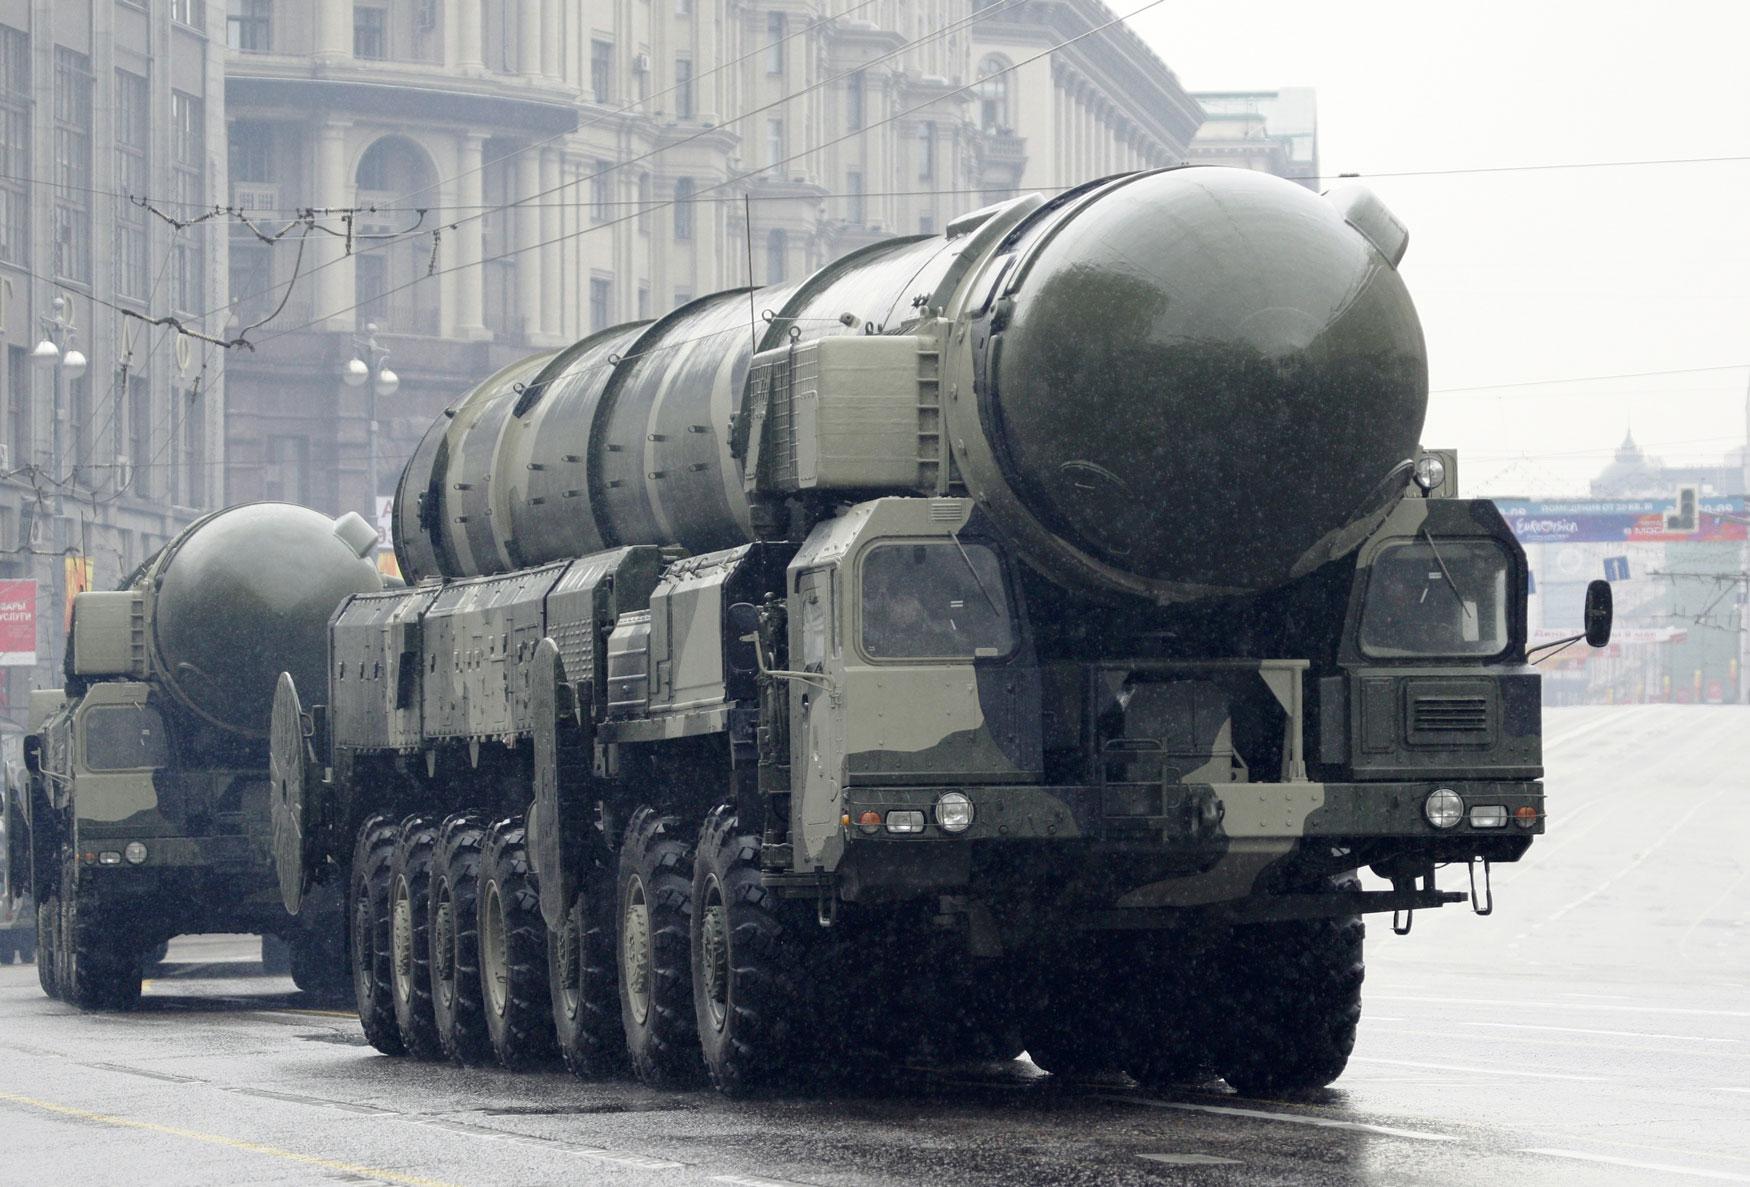 واشنطن تتهم روسيا بتطوير صواريخ مداها يشكل انتهاكا للمعاهدة النووية